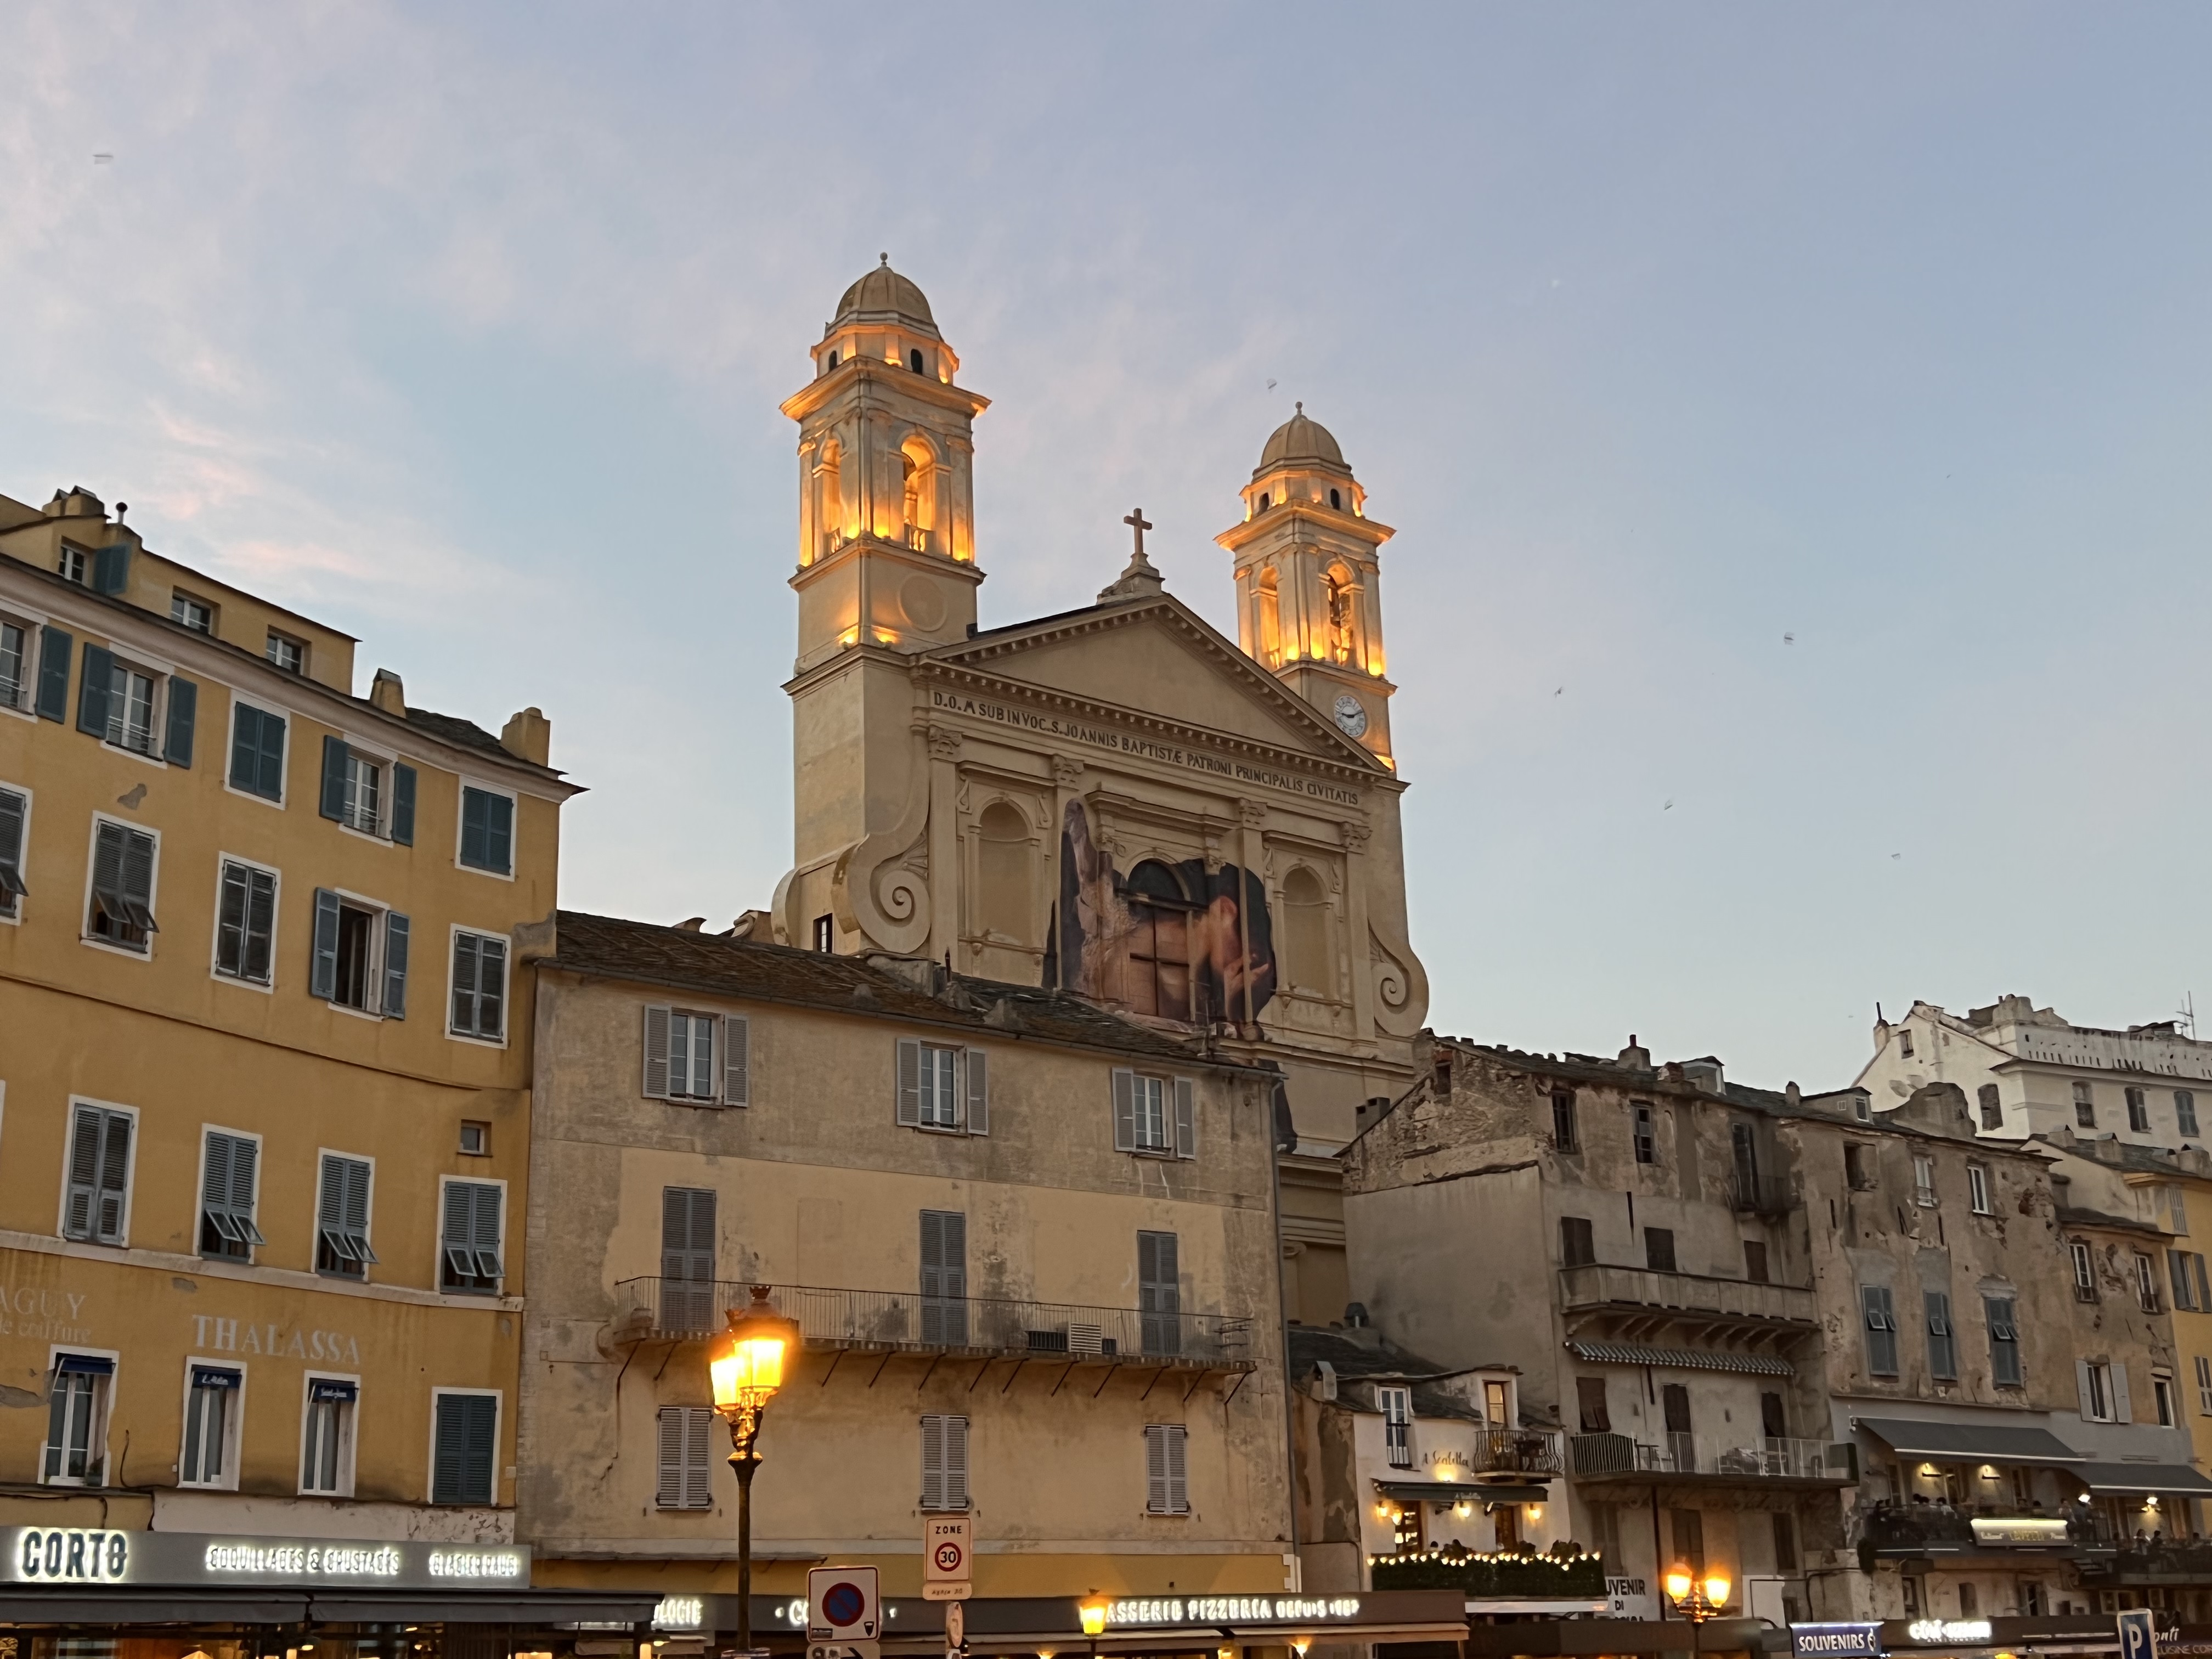 Bastia : une soirée d'échanges et musique autour de l’Europe et de la Méditerranée